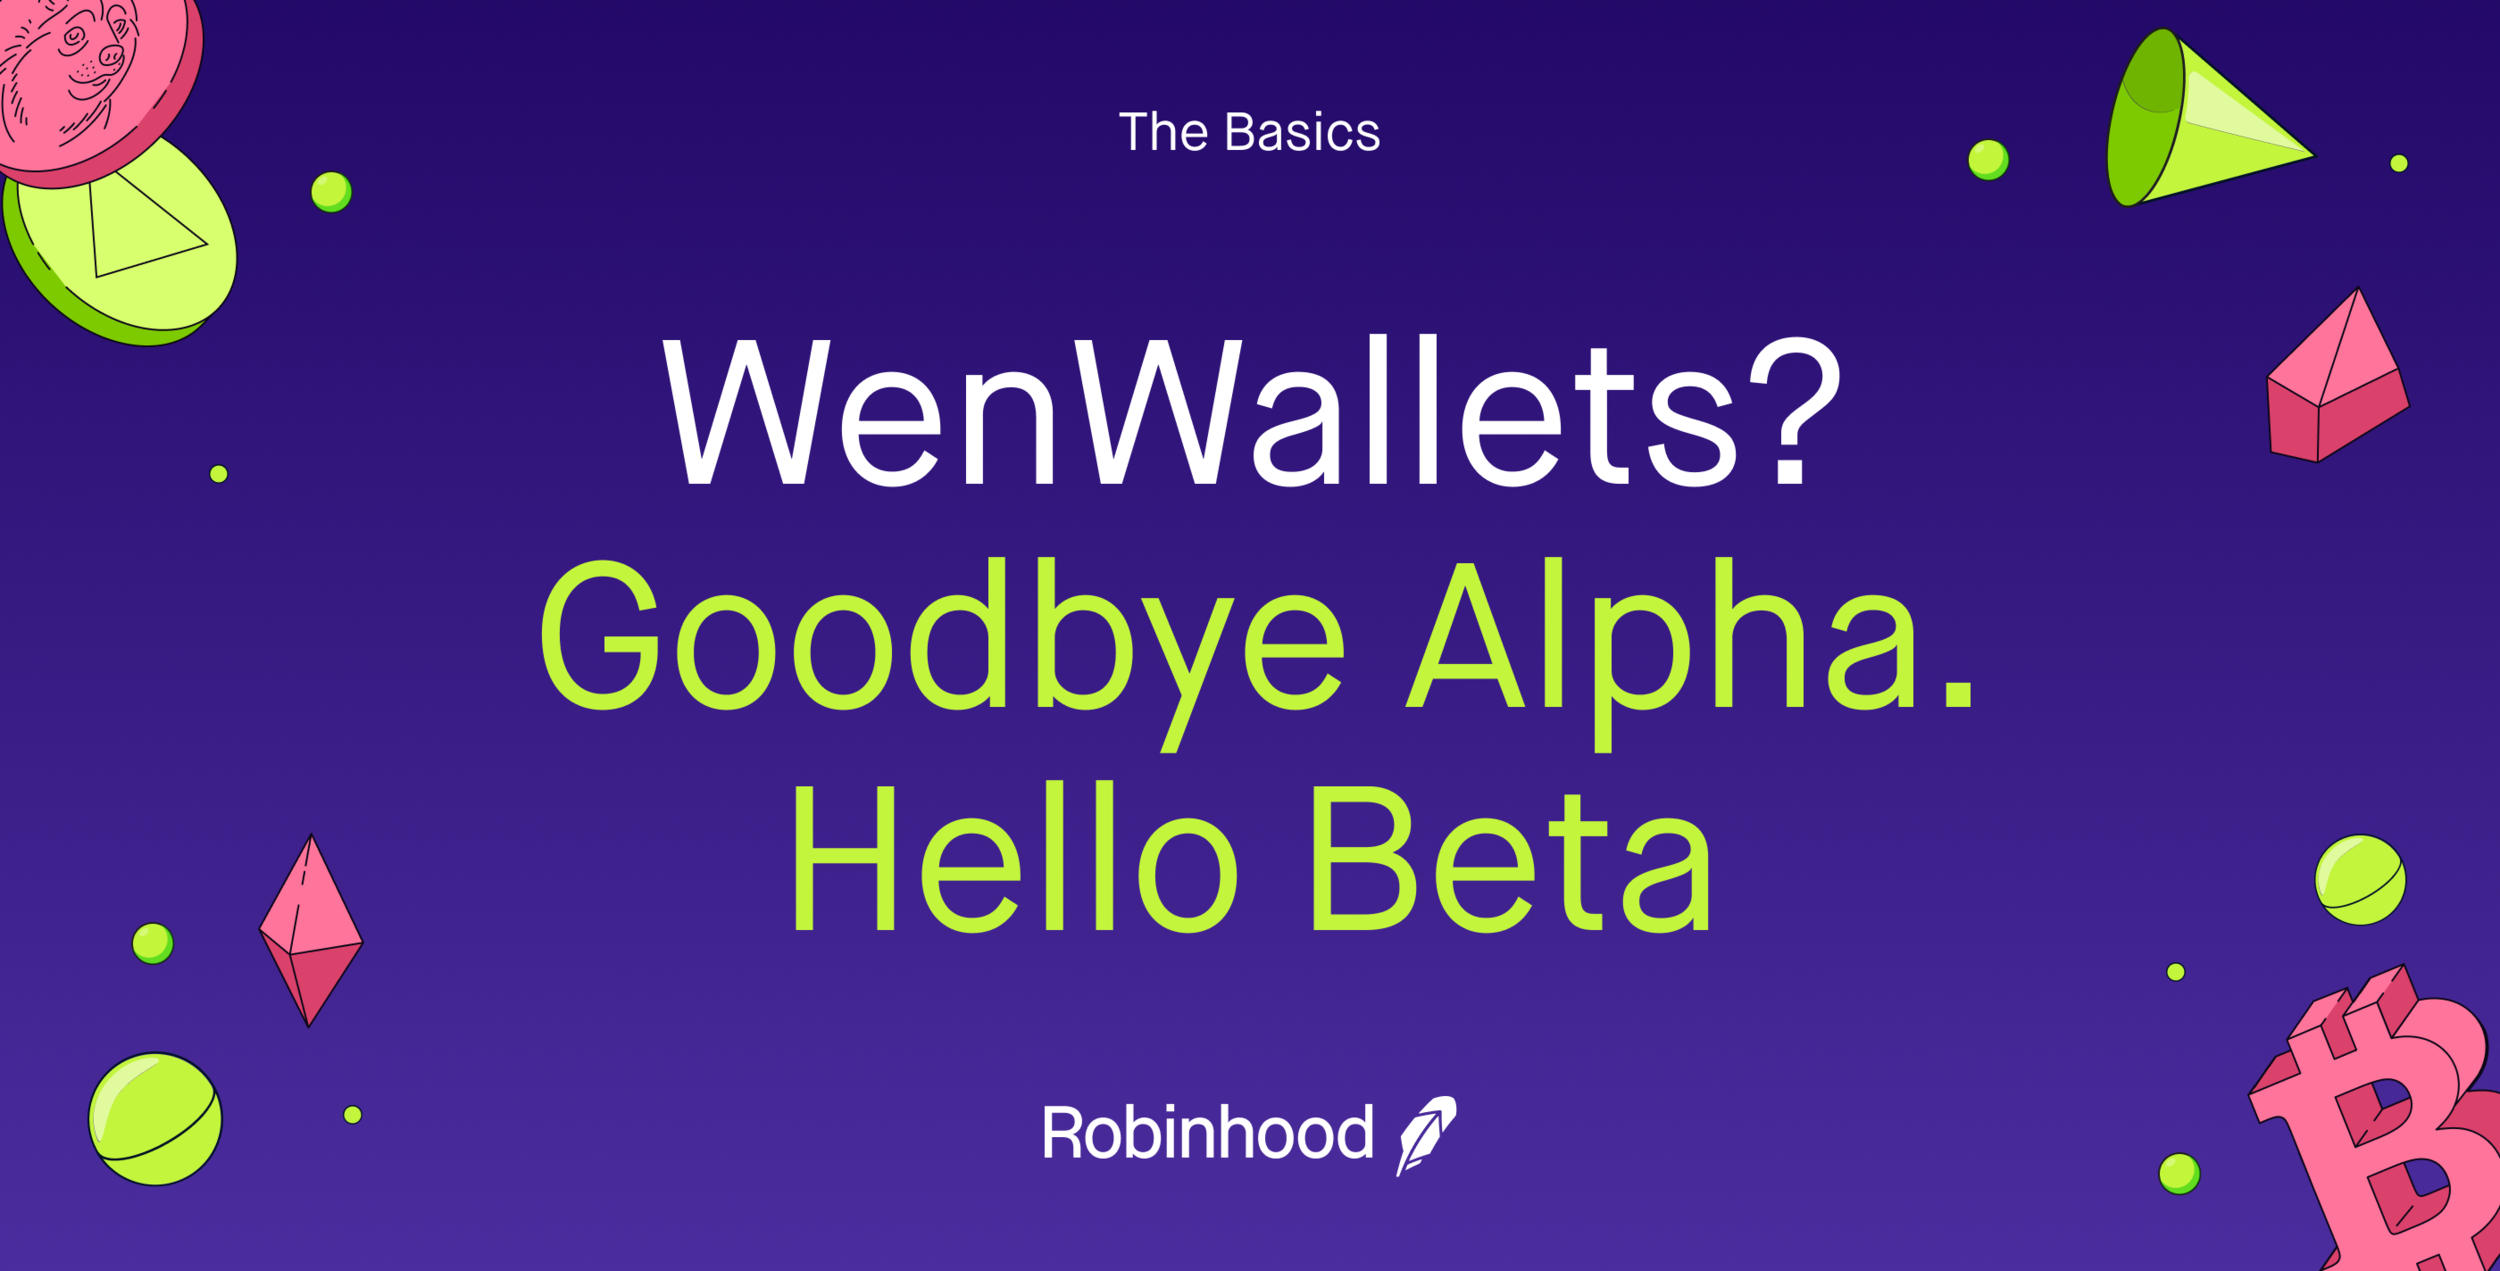 WenWallets? Goodbye Alpha, Hello Beta